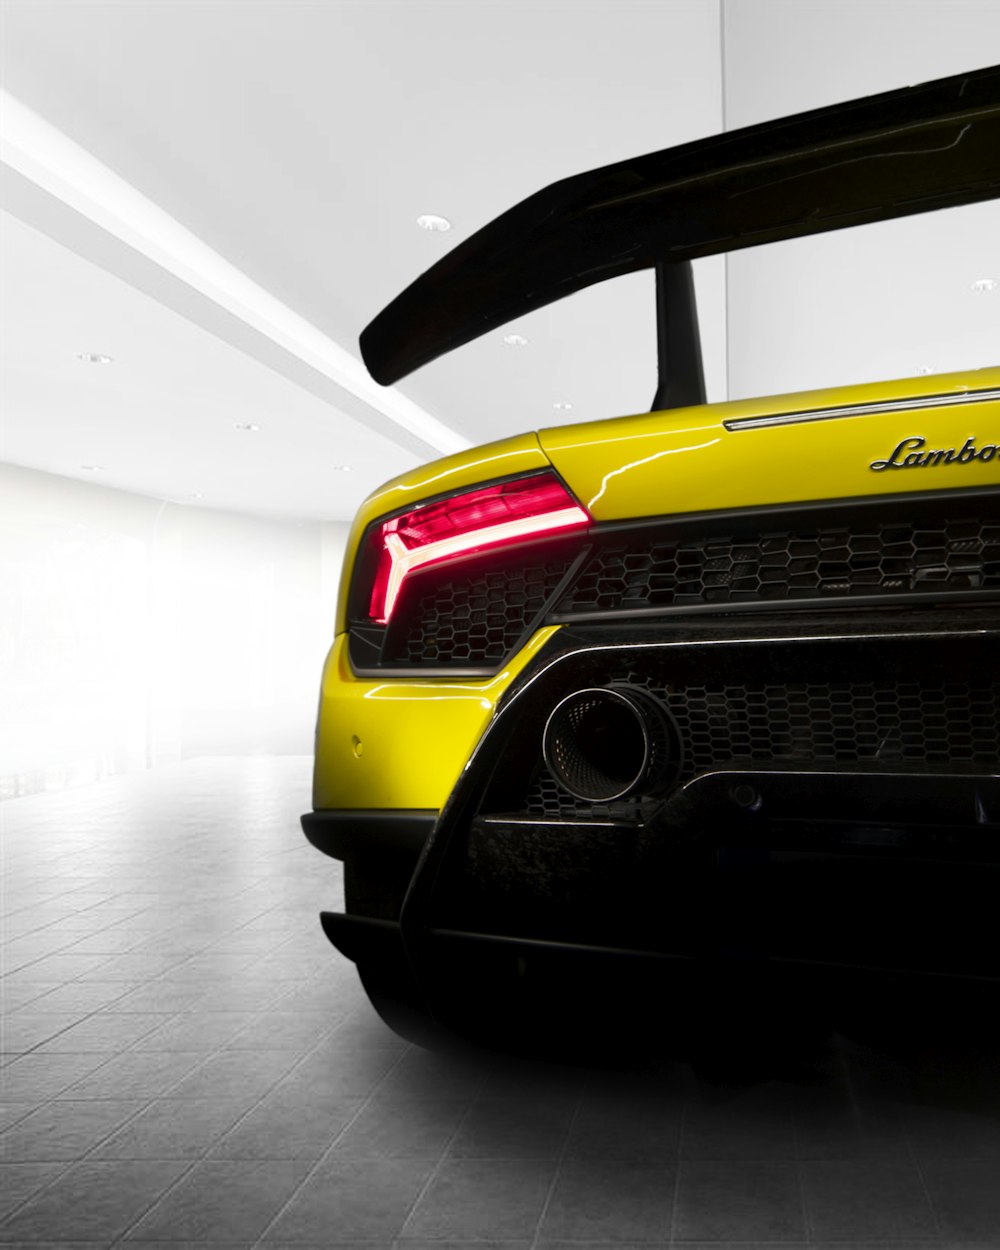 Capture d’écran du véhicule Lamborghini jaune et noir